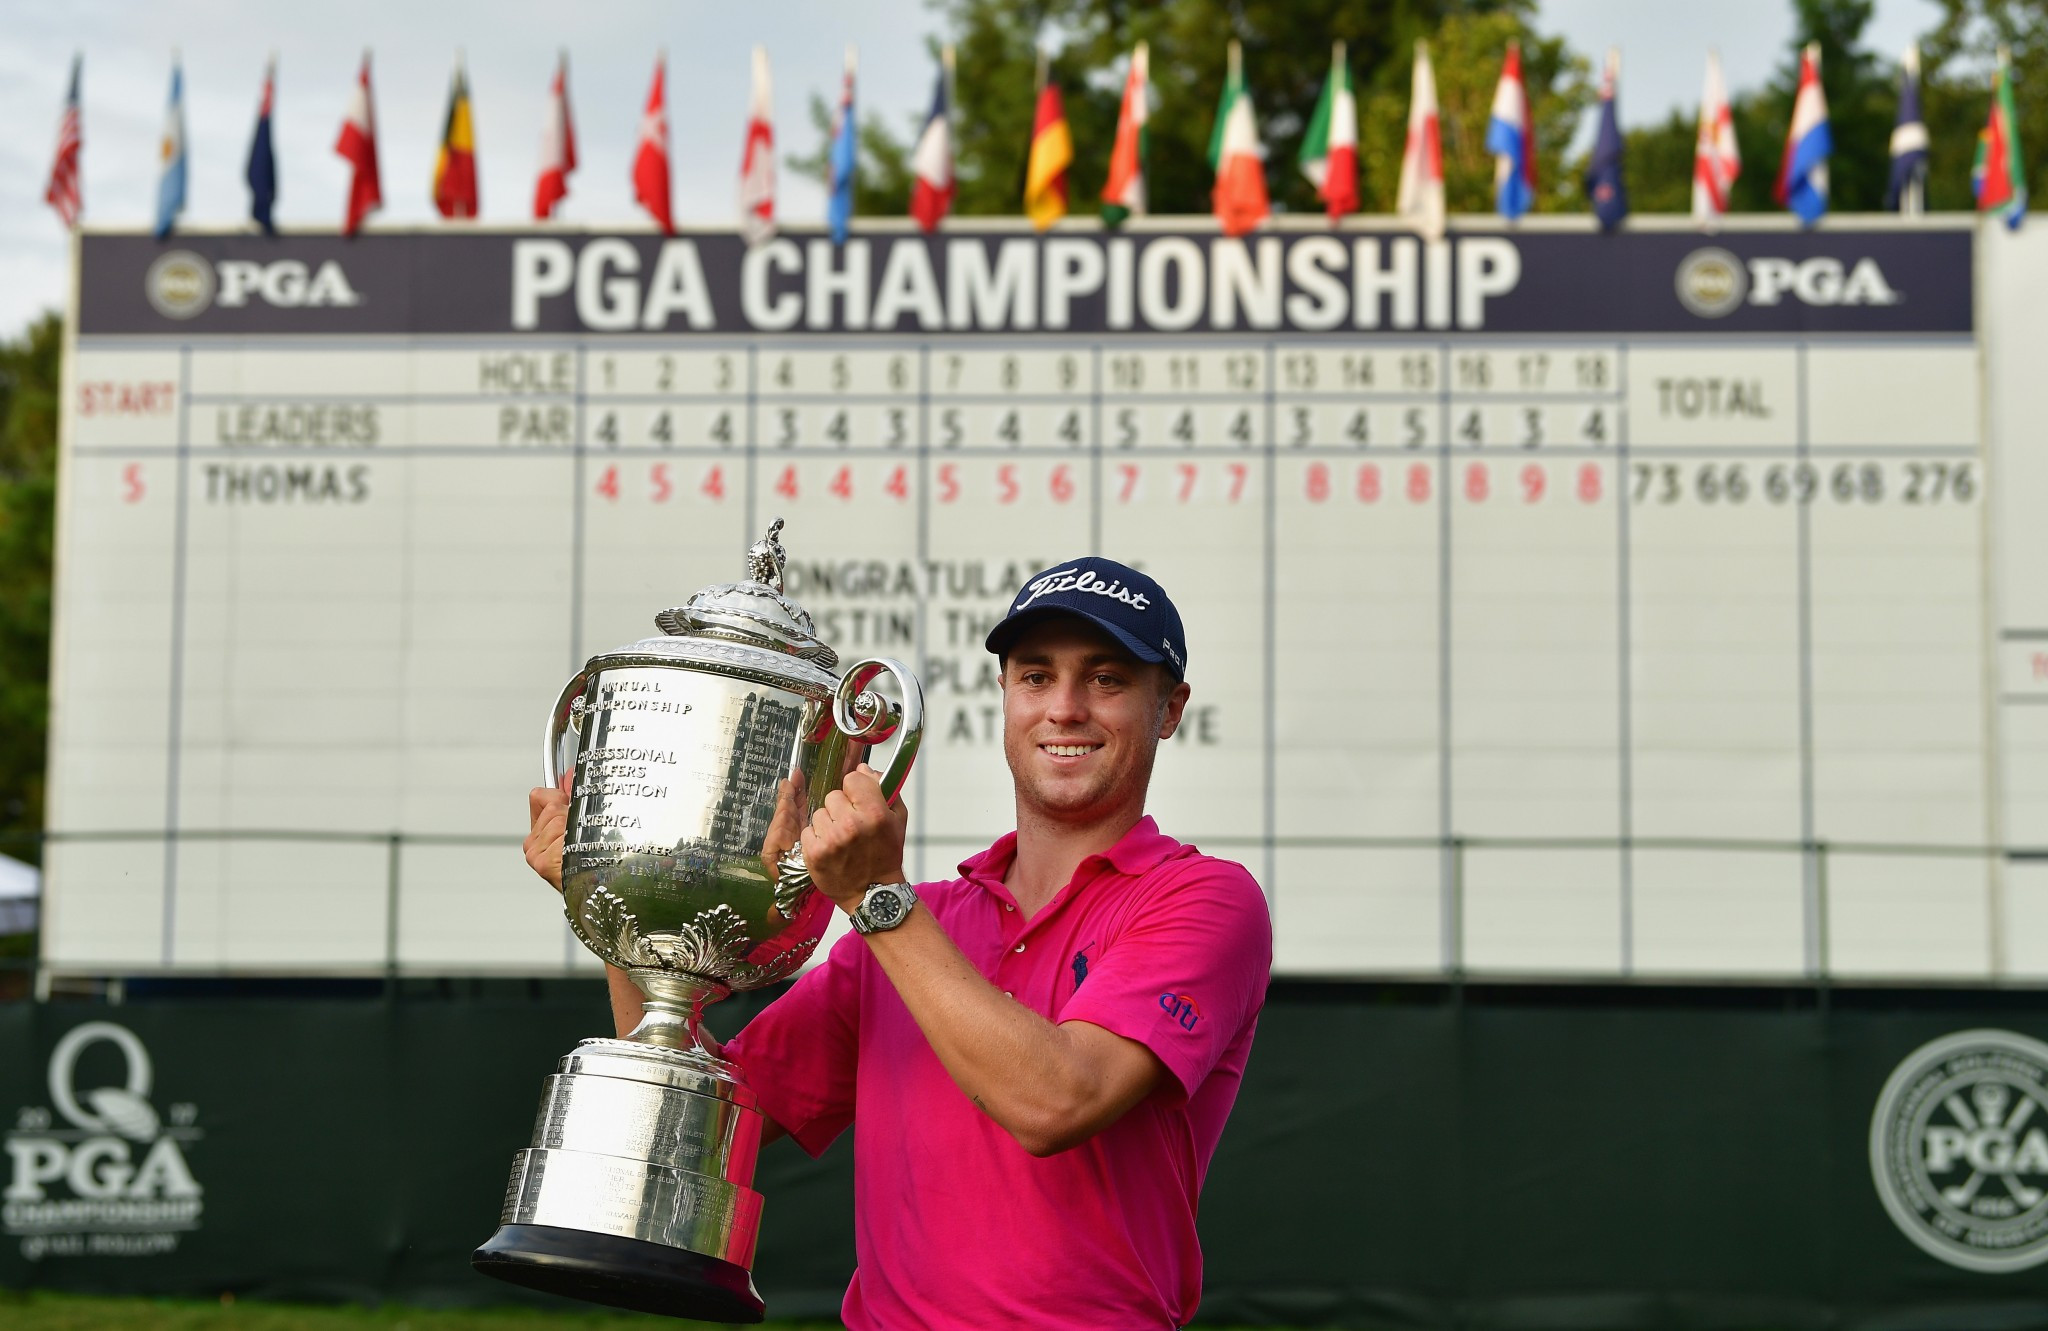 Thomas triumphs at PGA Championship to win first major